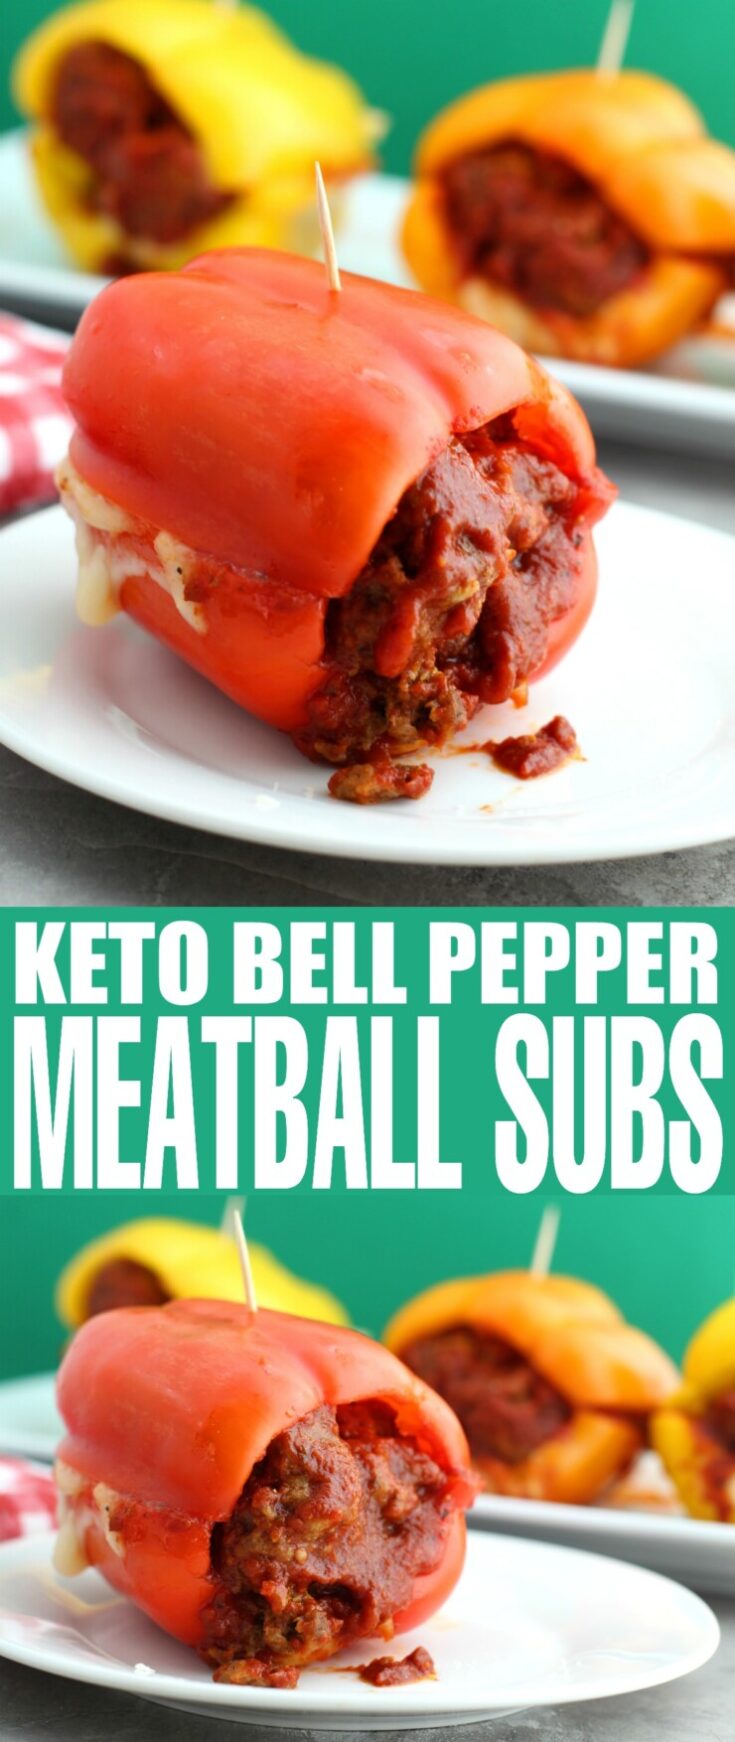 Keto Bell Pepper Meatball Subs